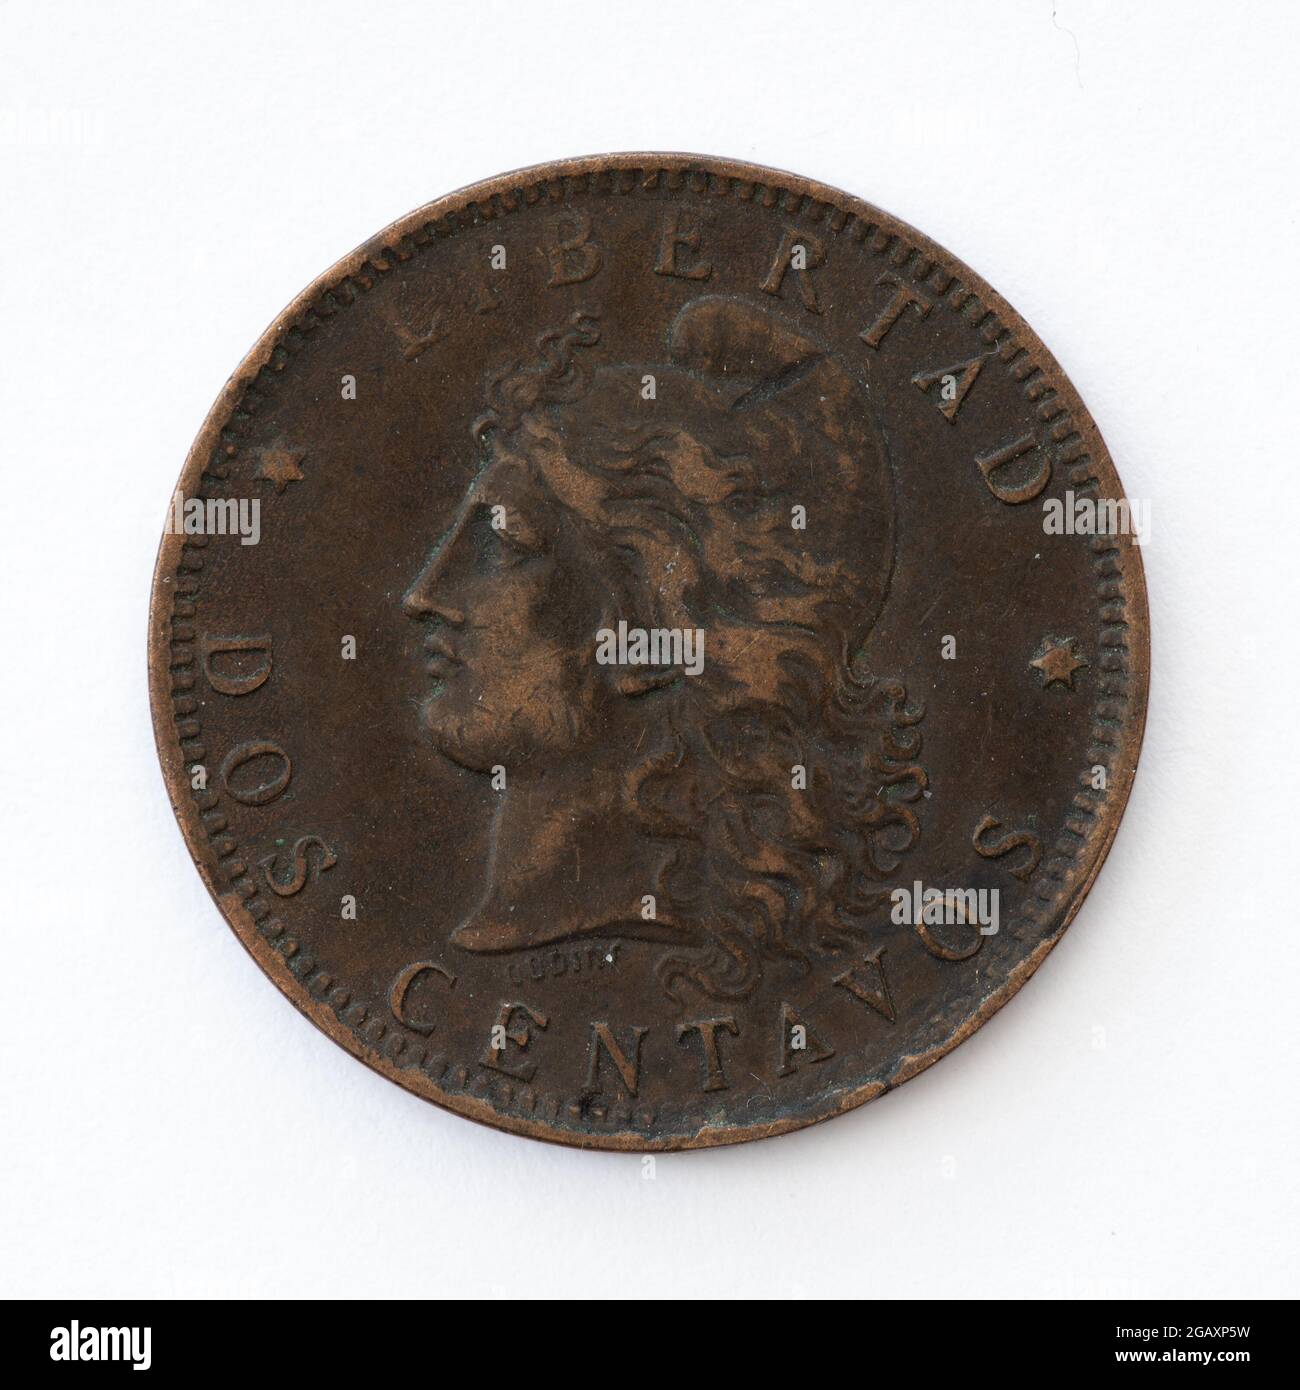 Fundas de papel profesionales para numismática y monedas antiguas  Fotografía de stock - Alamy